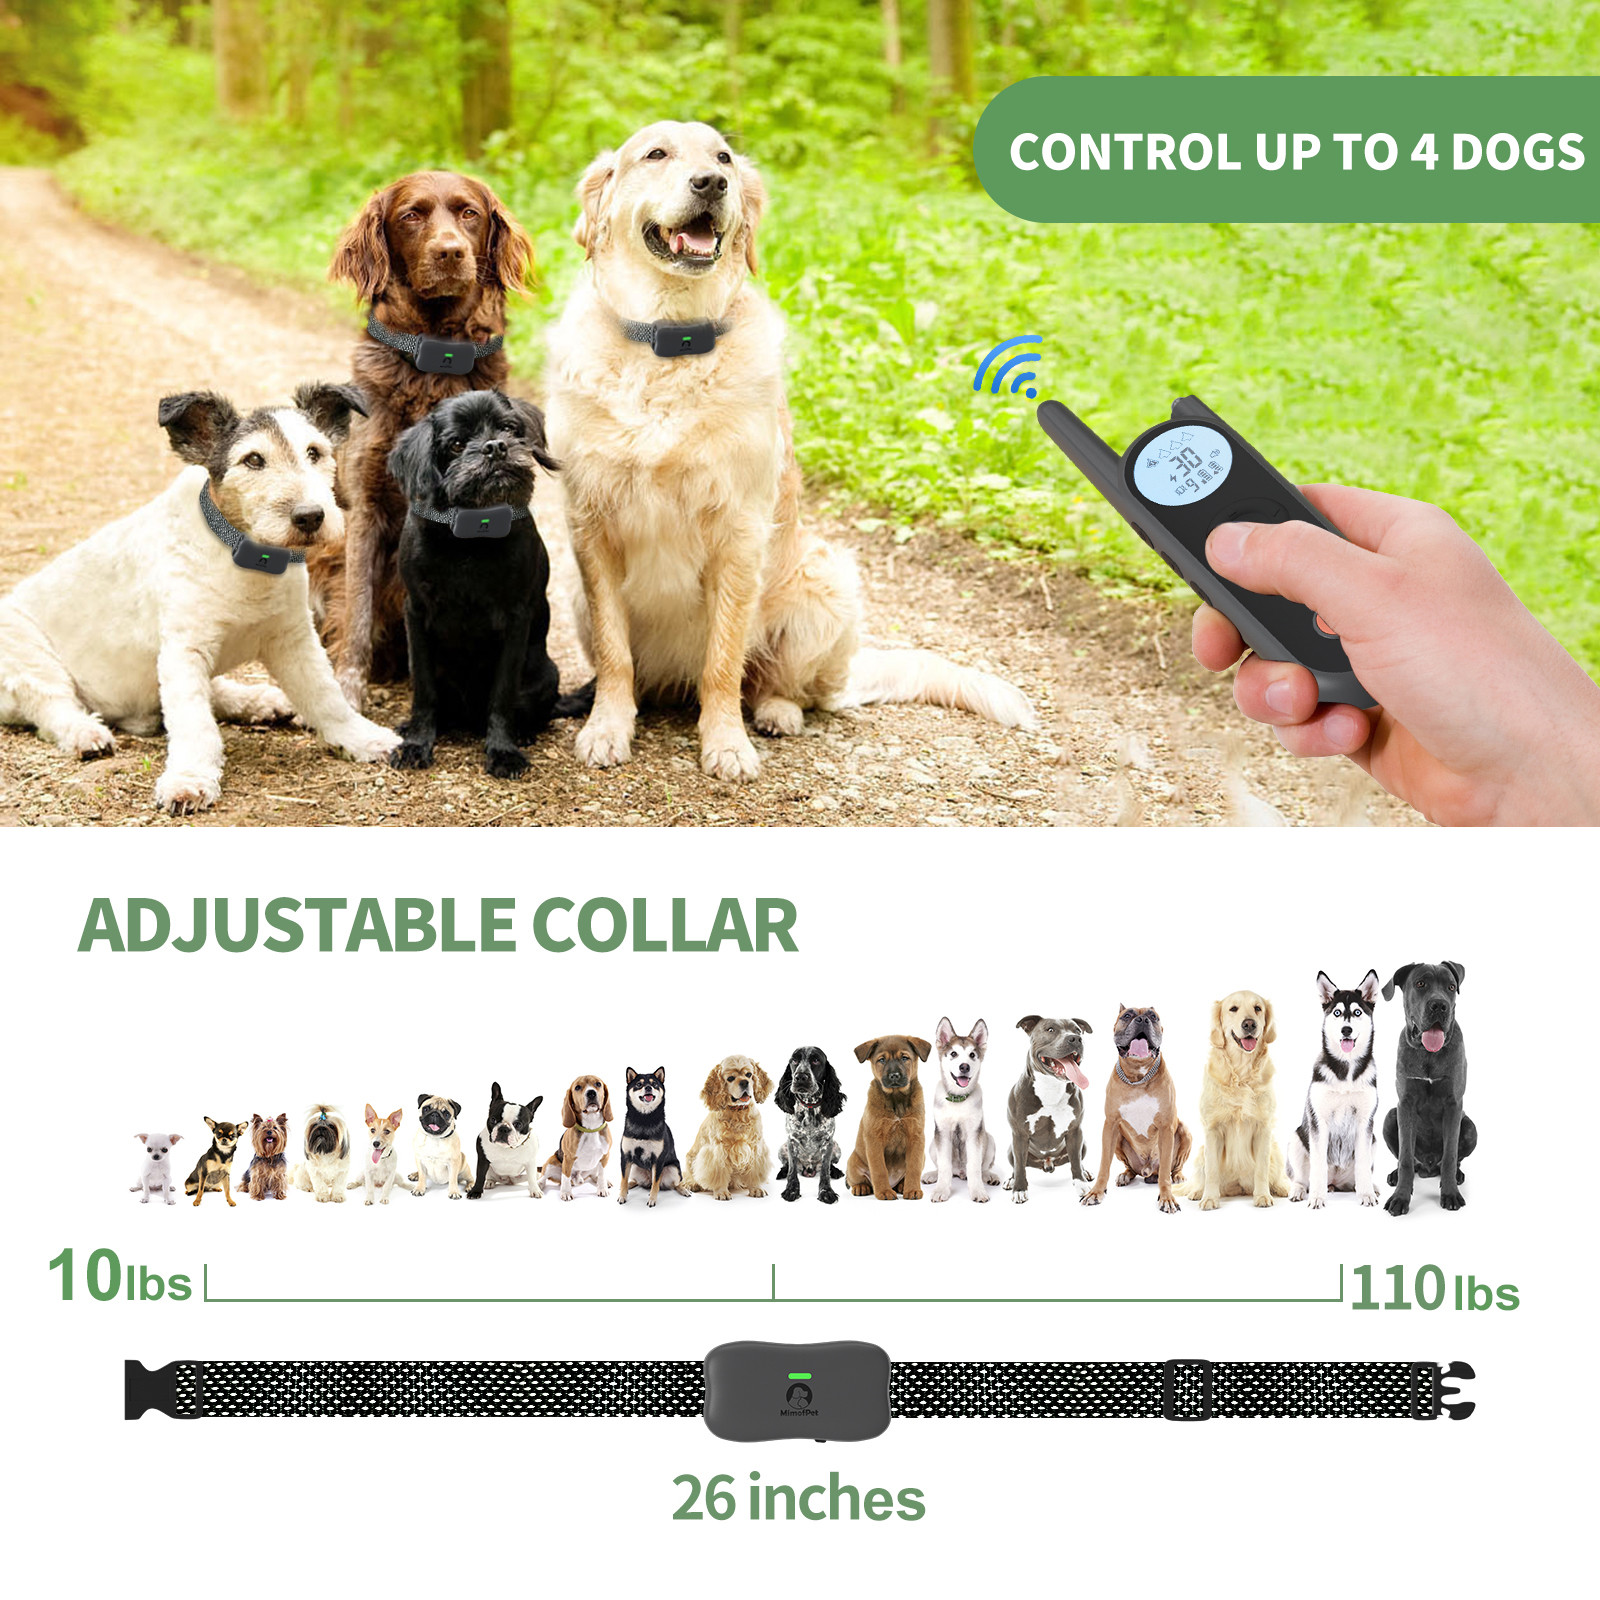 Introduzione nantu à Mimofpet X1 Model Dog Training Collar 01 (3)